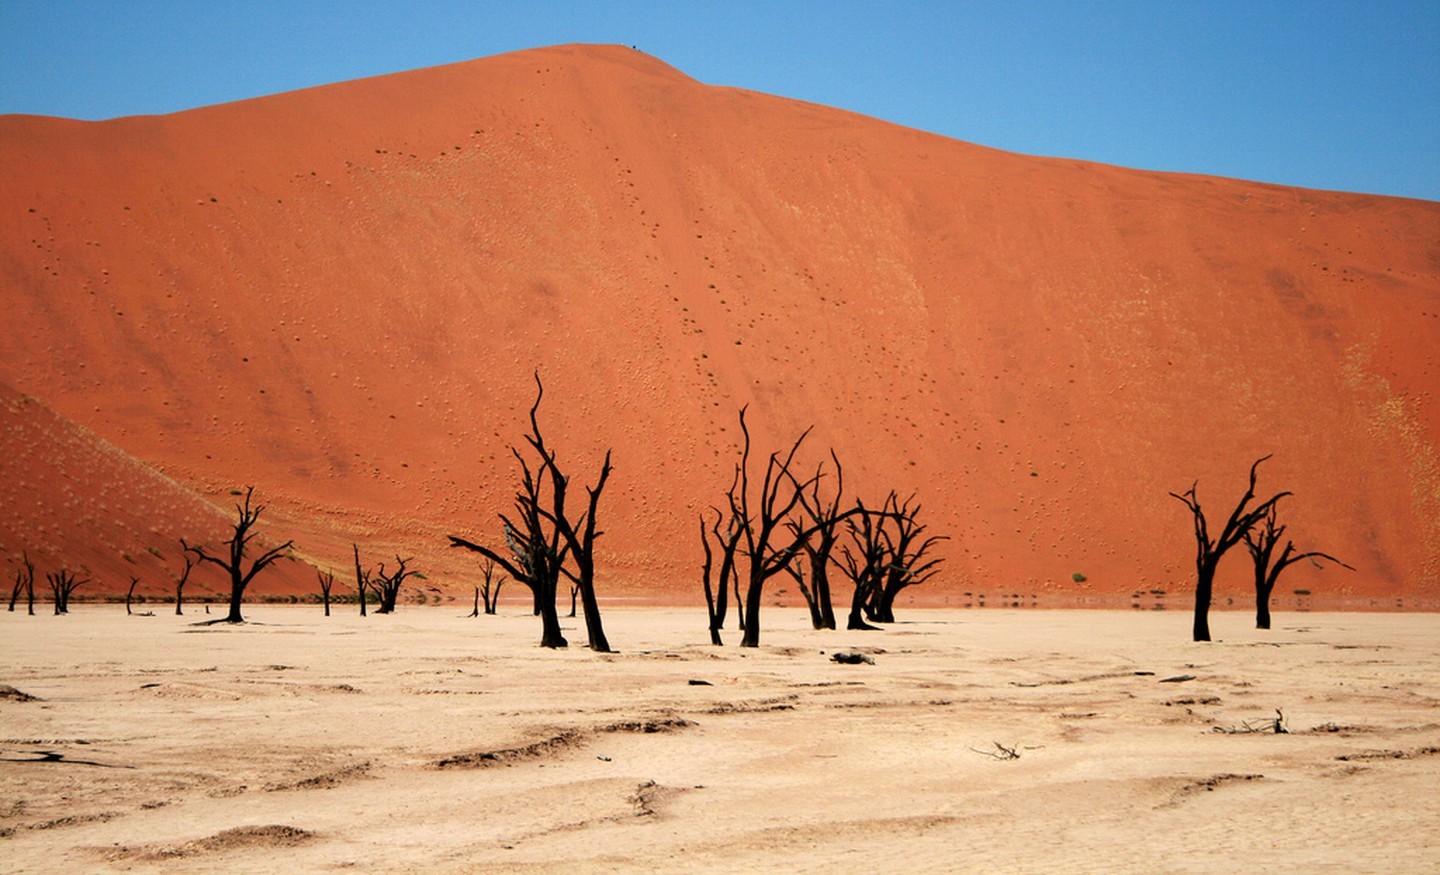 Namib Desert – Africa